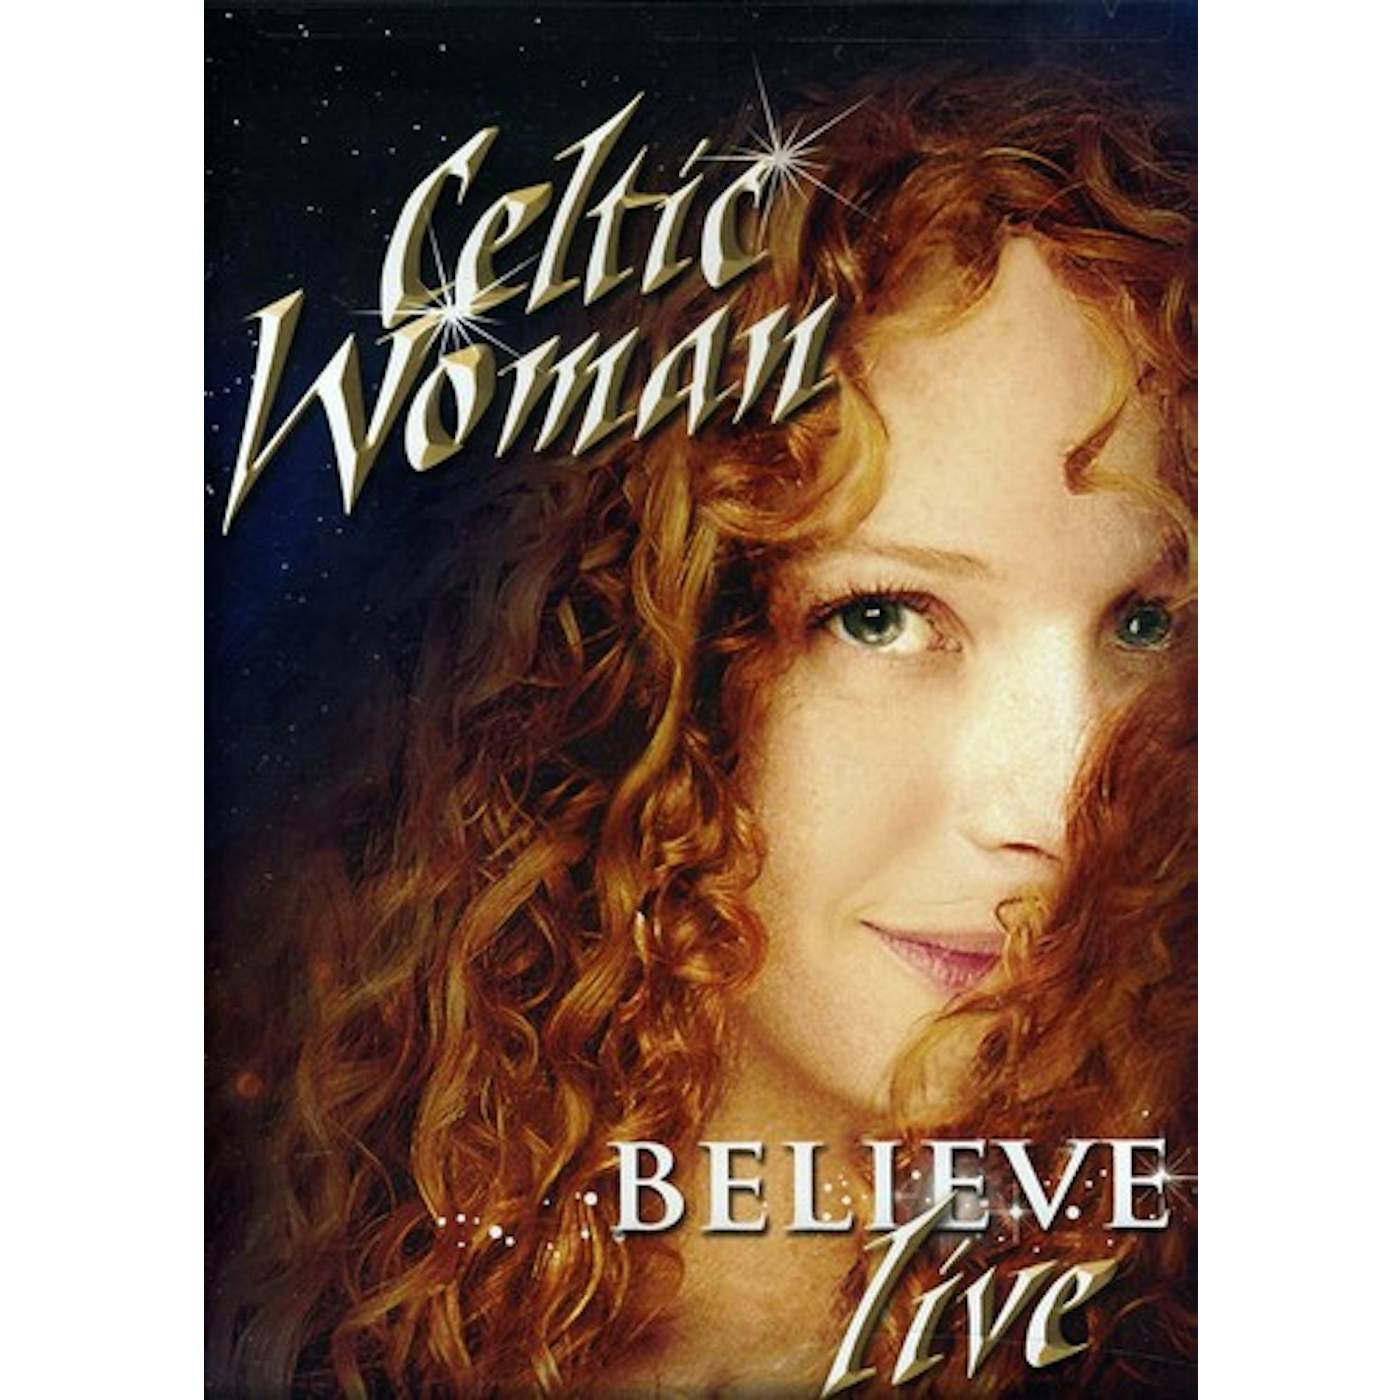 Celtic Woman BELIEVE DVD